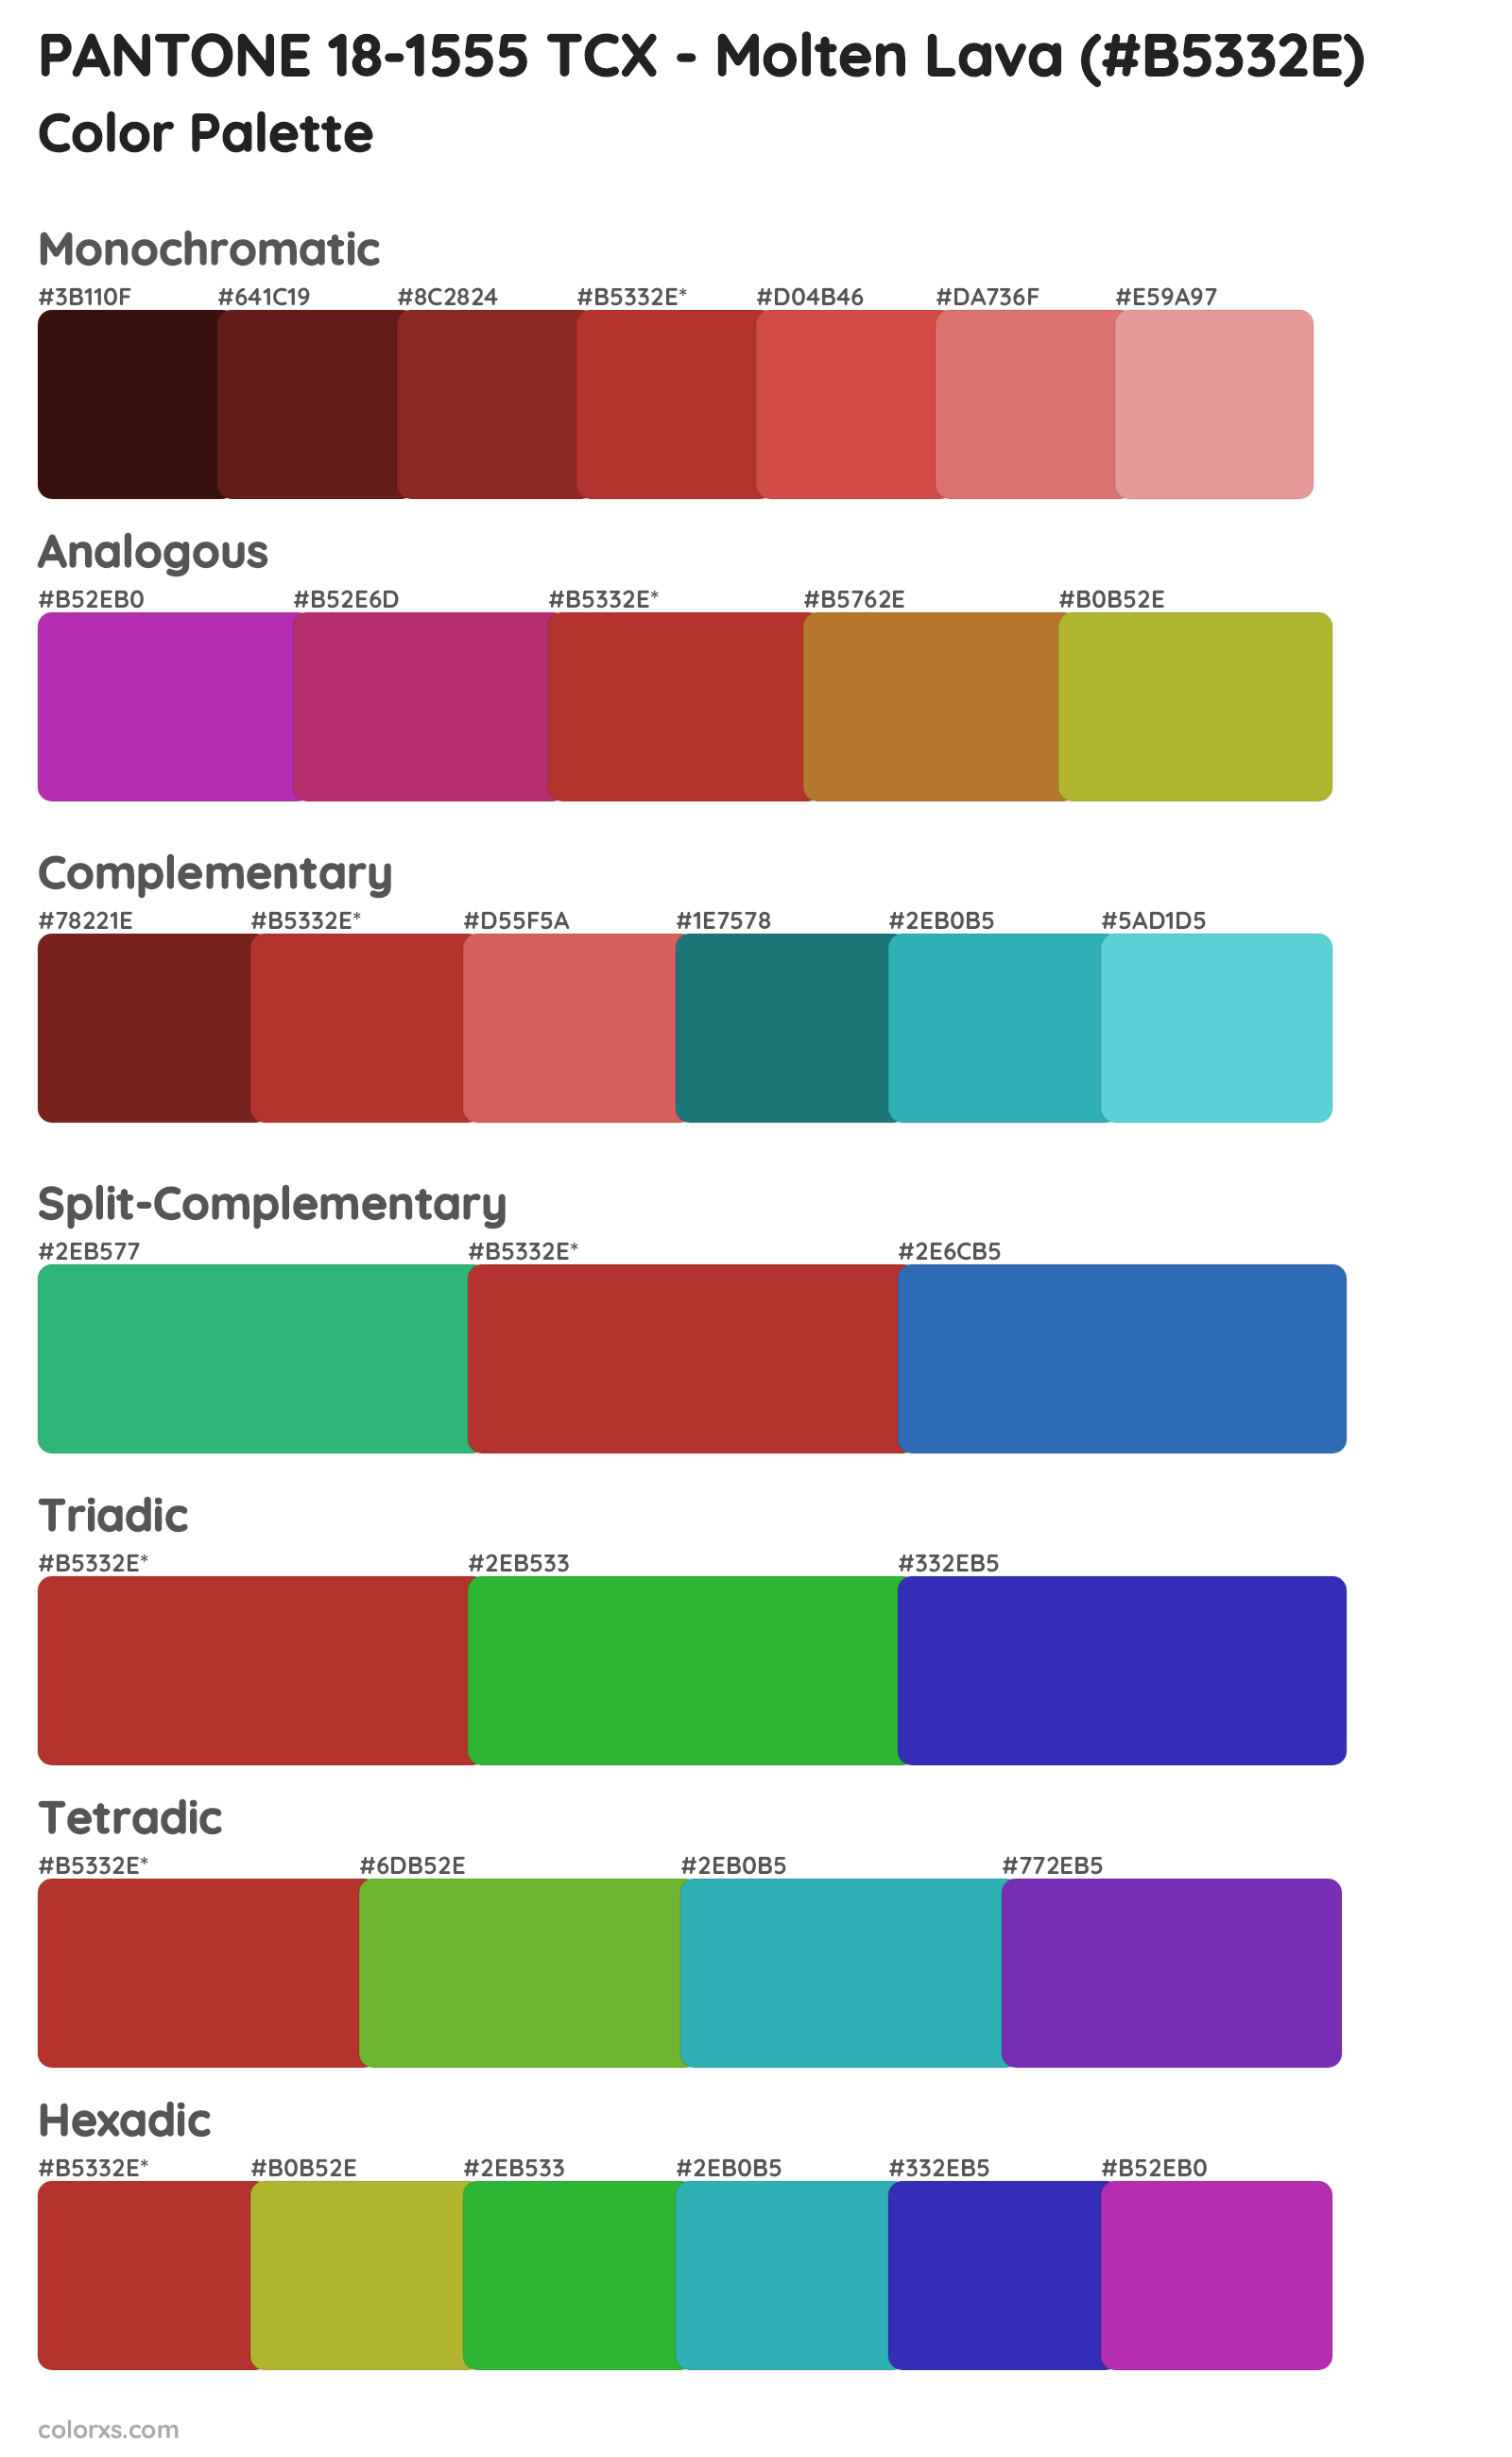 PANTONE 18-1555 TCX - Molten Lava Color Scheme Palettes